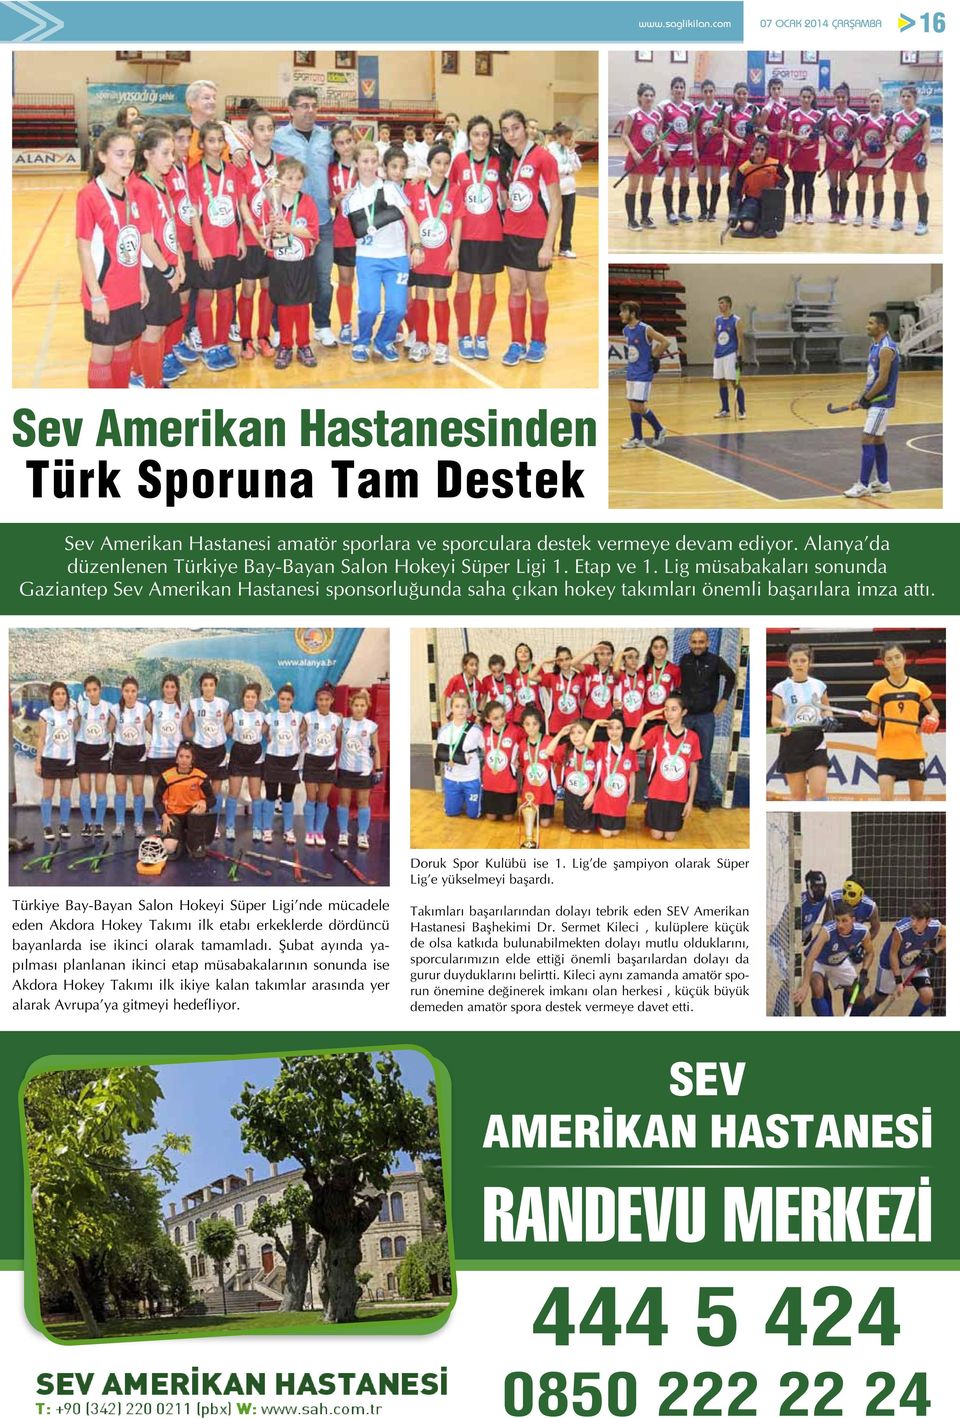 Lig müsabakaları sonunda Gaziantep Sev Amerikan Hastanesi sponsorluğunda saha çıkan hokey takımları önemli başarılara imza attı. Doruk Spor Kulübü ise 1.